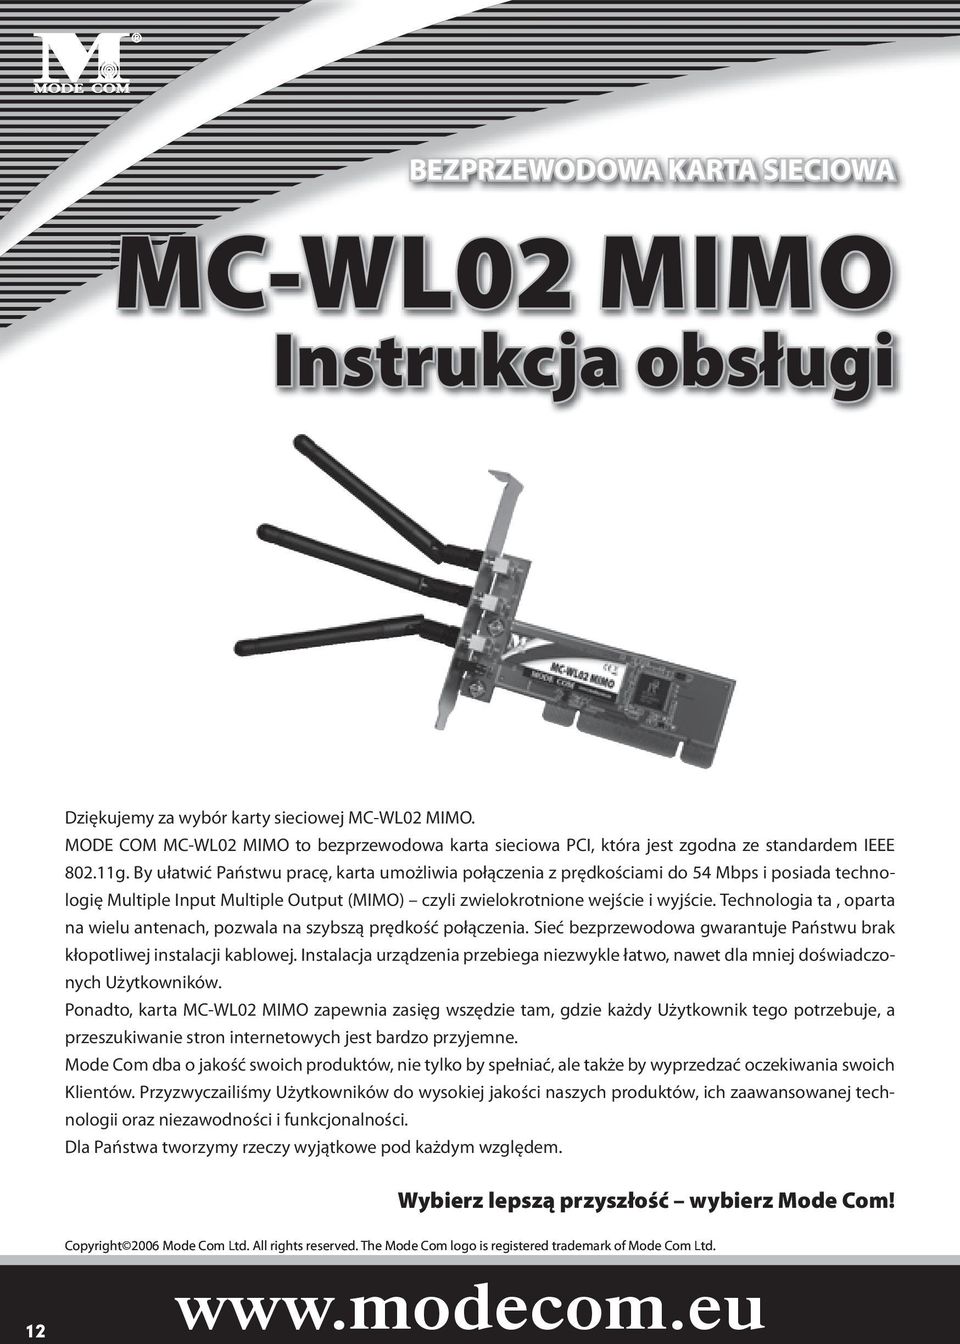 By ułatwić Państwu pracę, karta umożliwia połączenia z prędkościami do 54 Mbps i posiada technologię Multiple Input Multiple Output (MIMO) czyli zwielokrotnione wejście i wyjście.